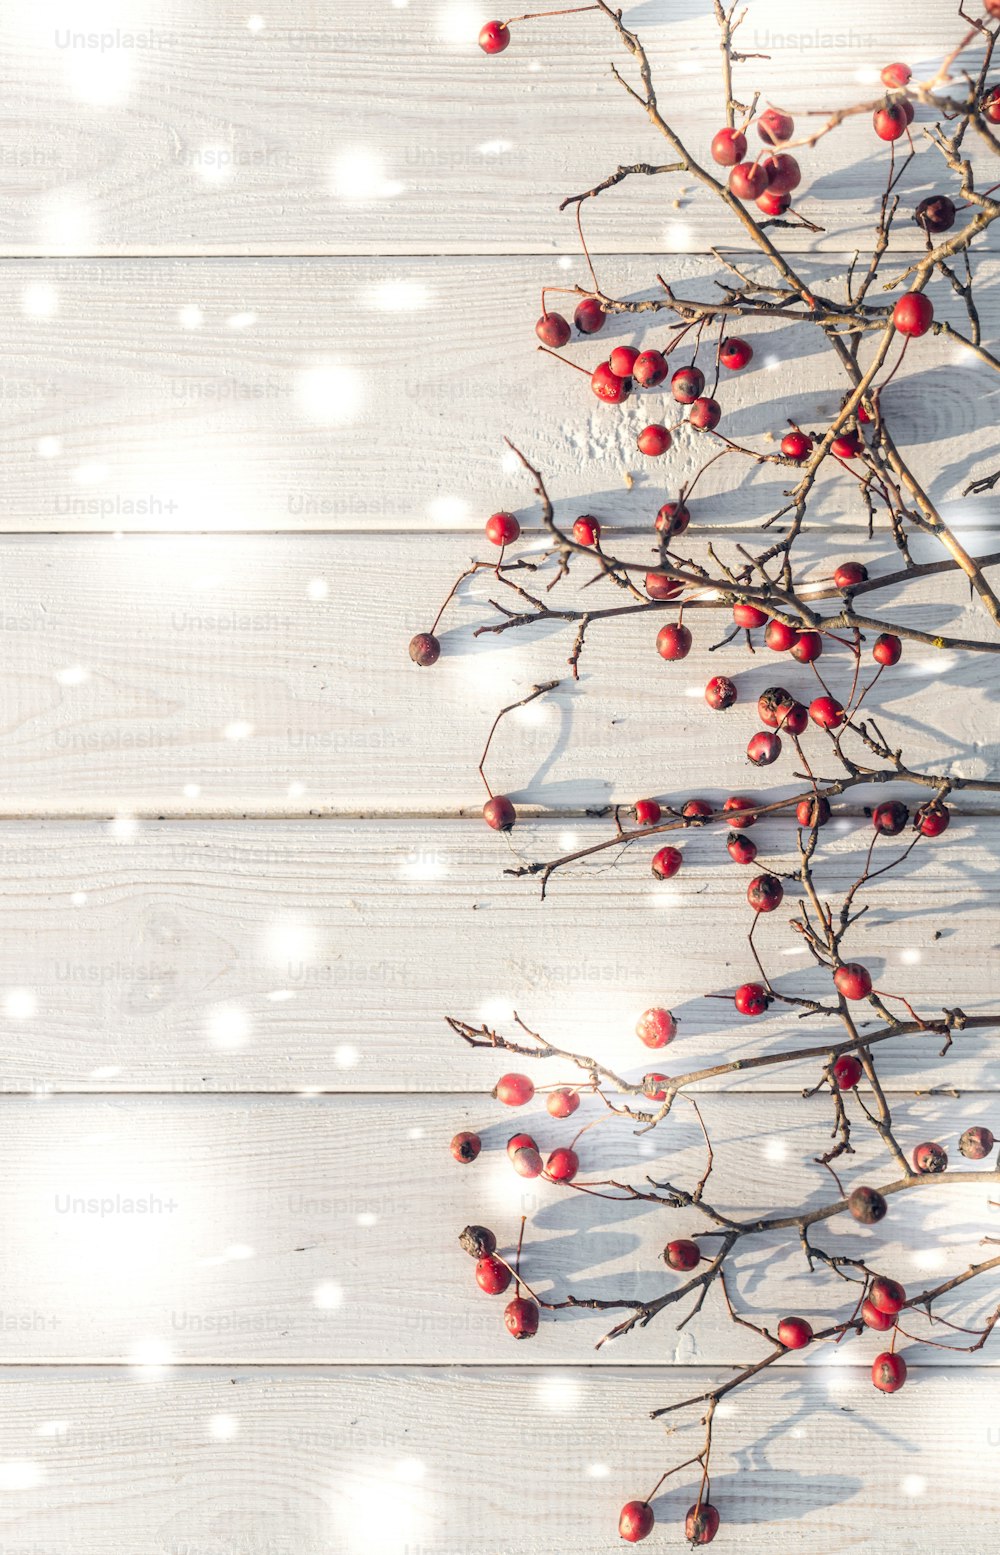 Sfondo festivo invernale. Le bacche rosso vivo delle bacche di biancospino mature su uno sfondo di eleganti tavole bianche. Sfondo decorativo per biglietti di auguri di Natale e Capodanno